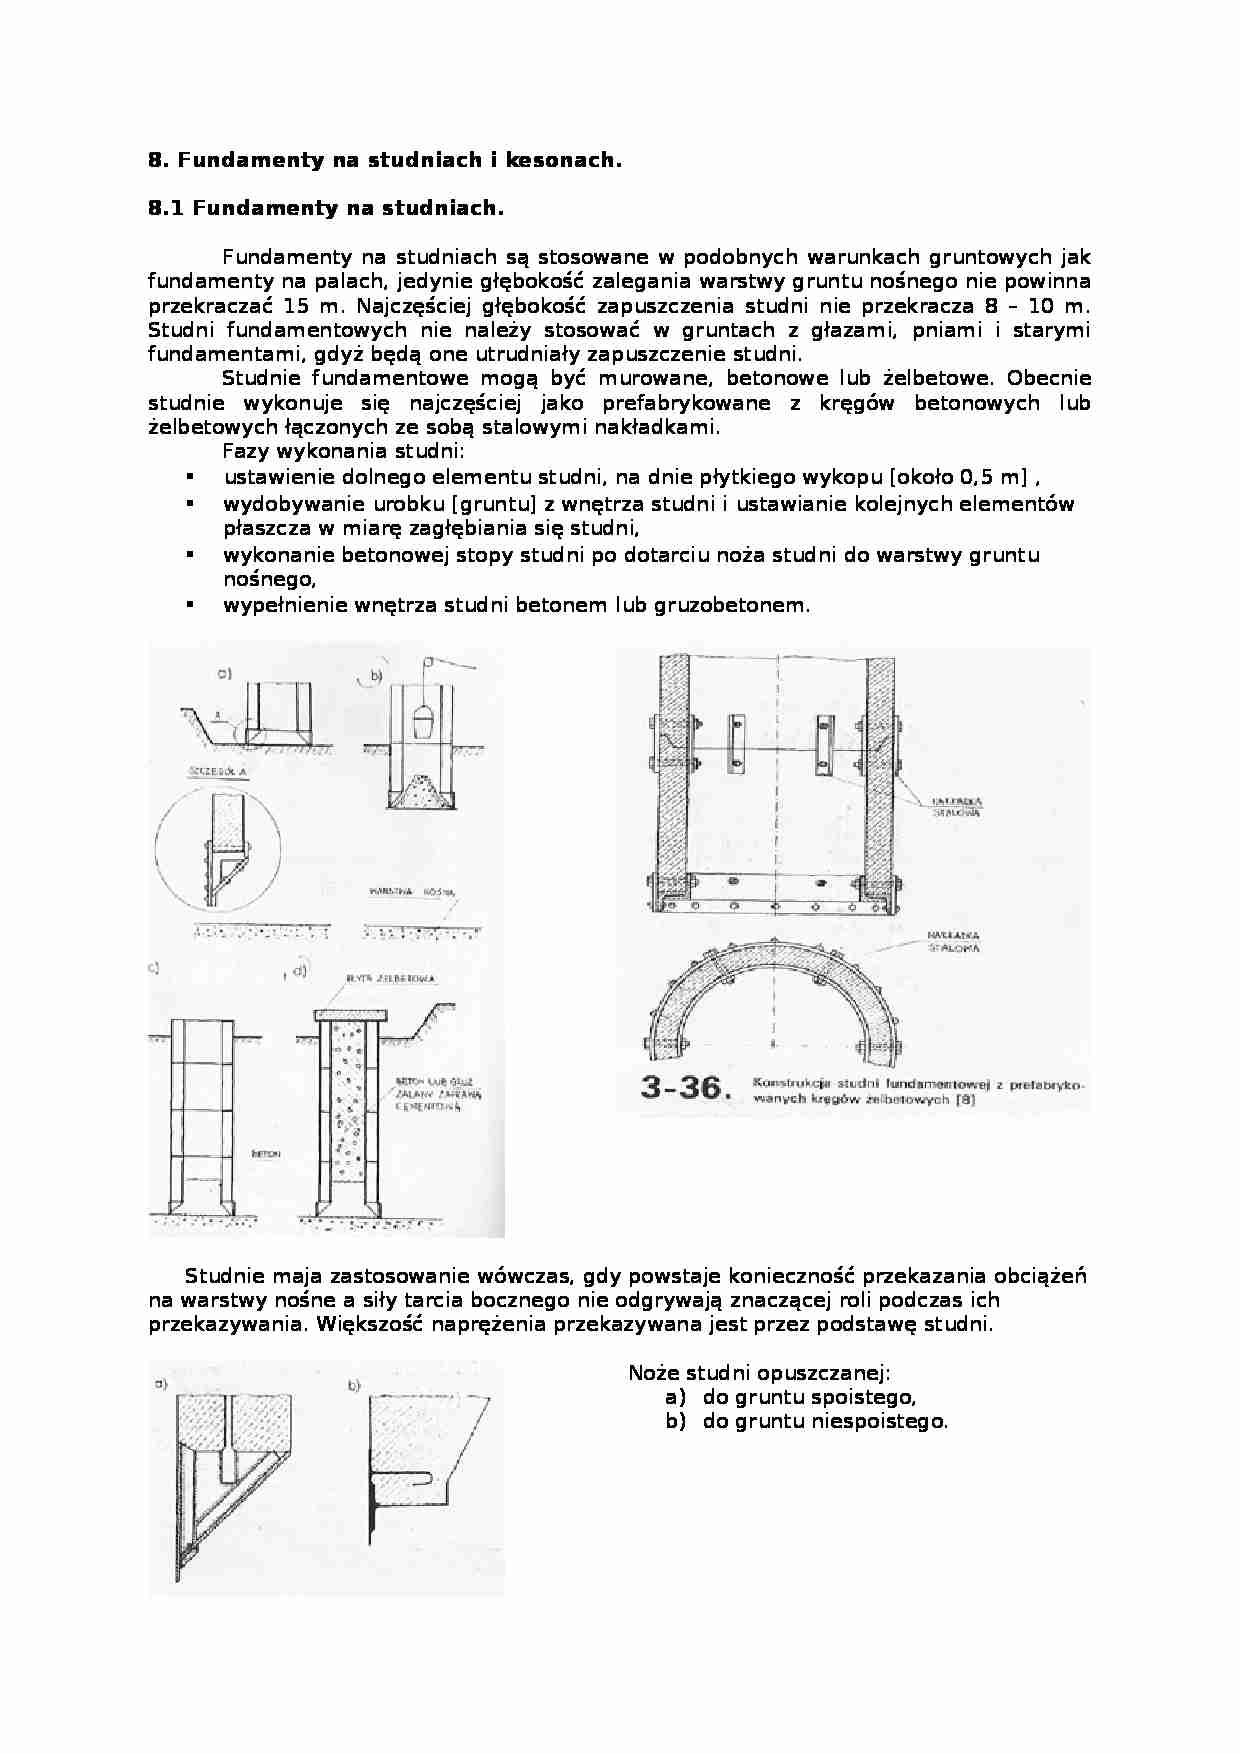 Fundamenty na studniach i kesonach-opracowanie - strona 1